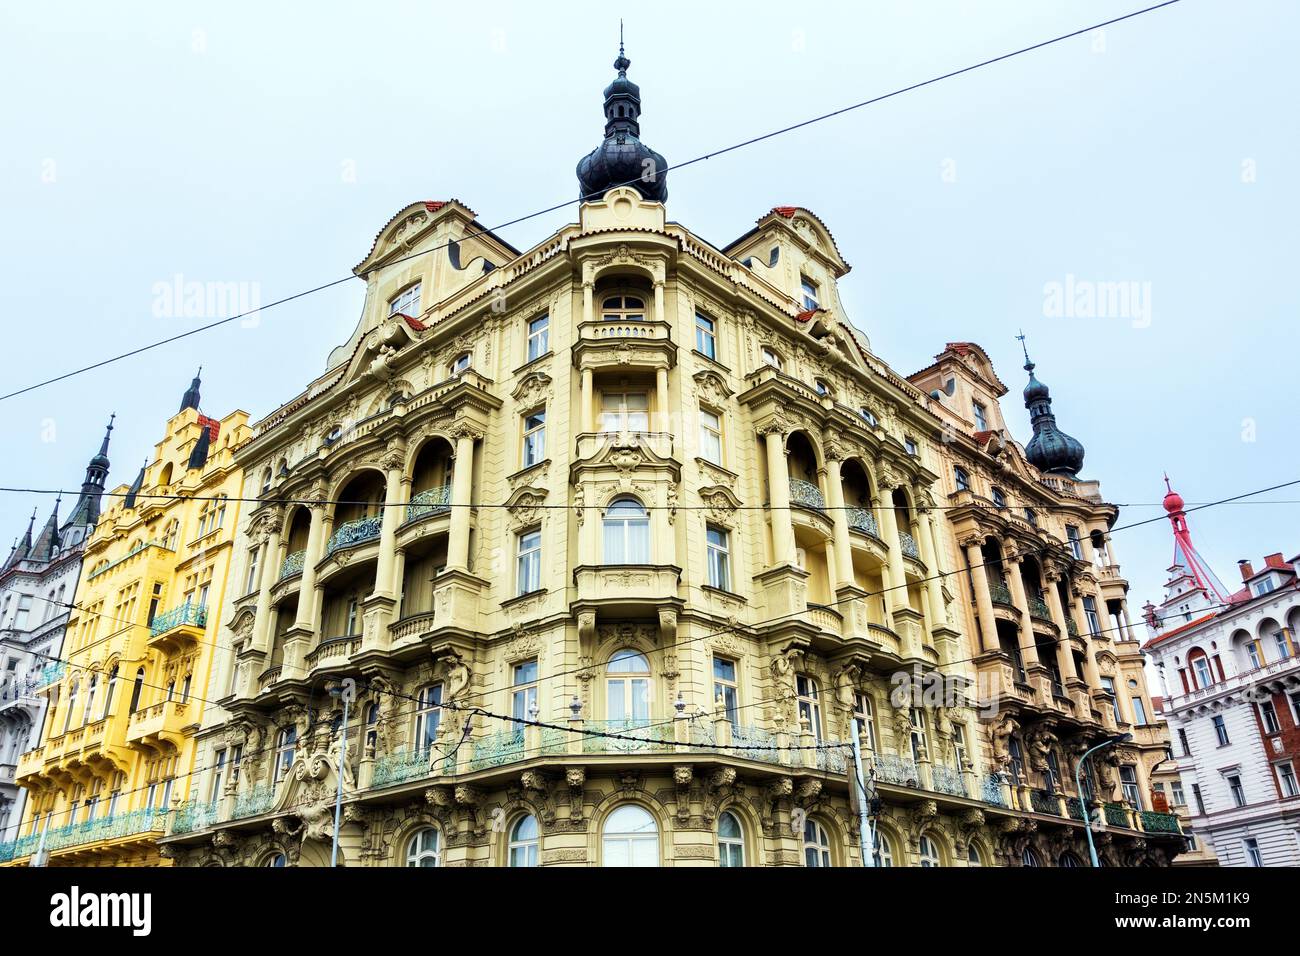 Détails architecturaux sur un bâtiment historique dans le centre-ville de Prague, Prague, Tchèque Banque D'Images